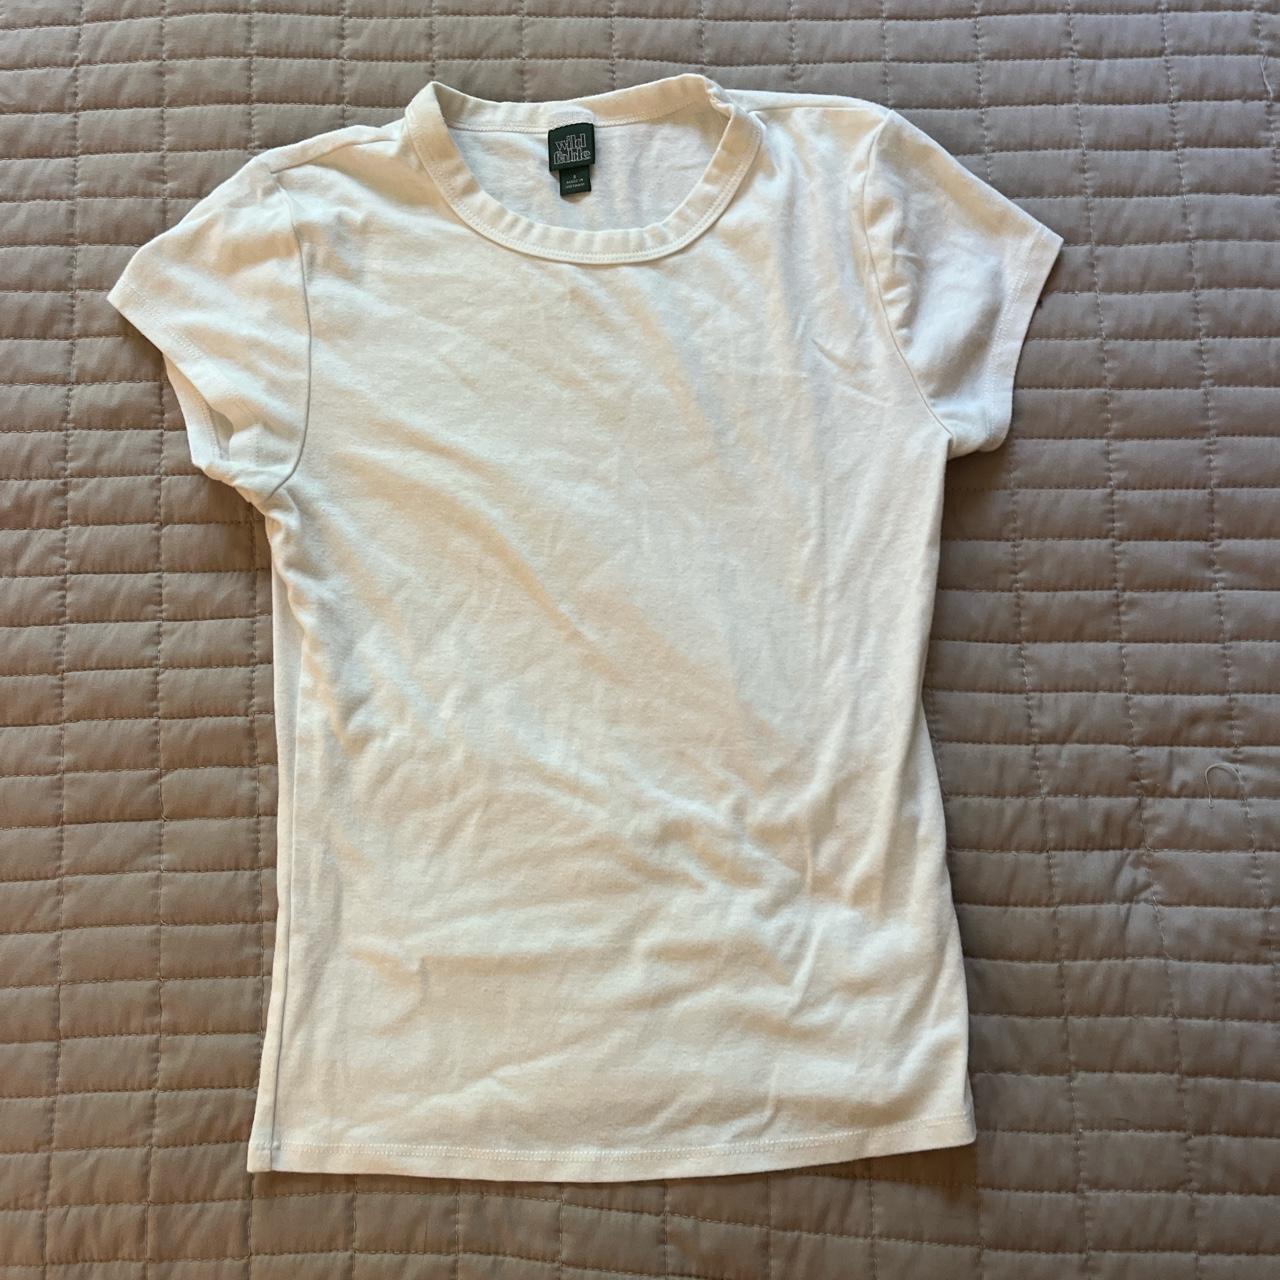 Wild fable white tee shirt #brandymelville #basics - Depop